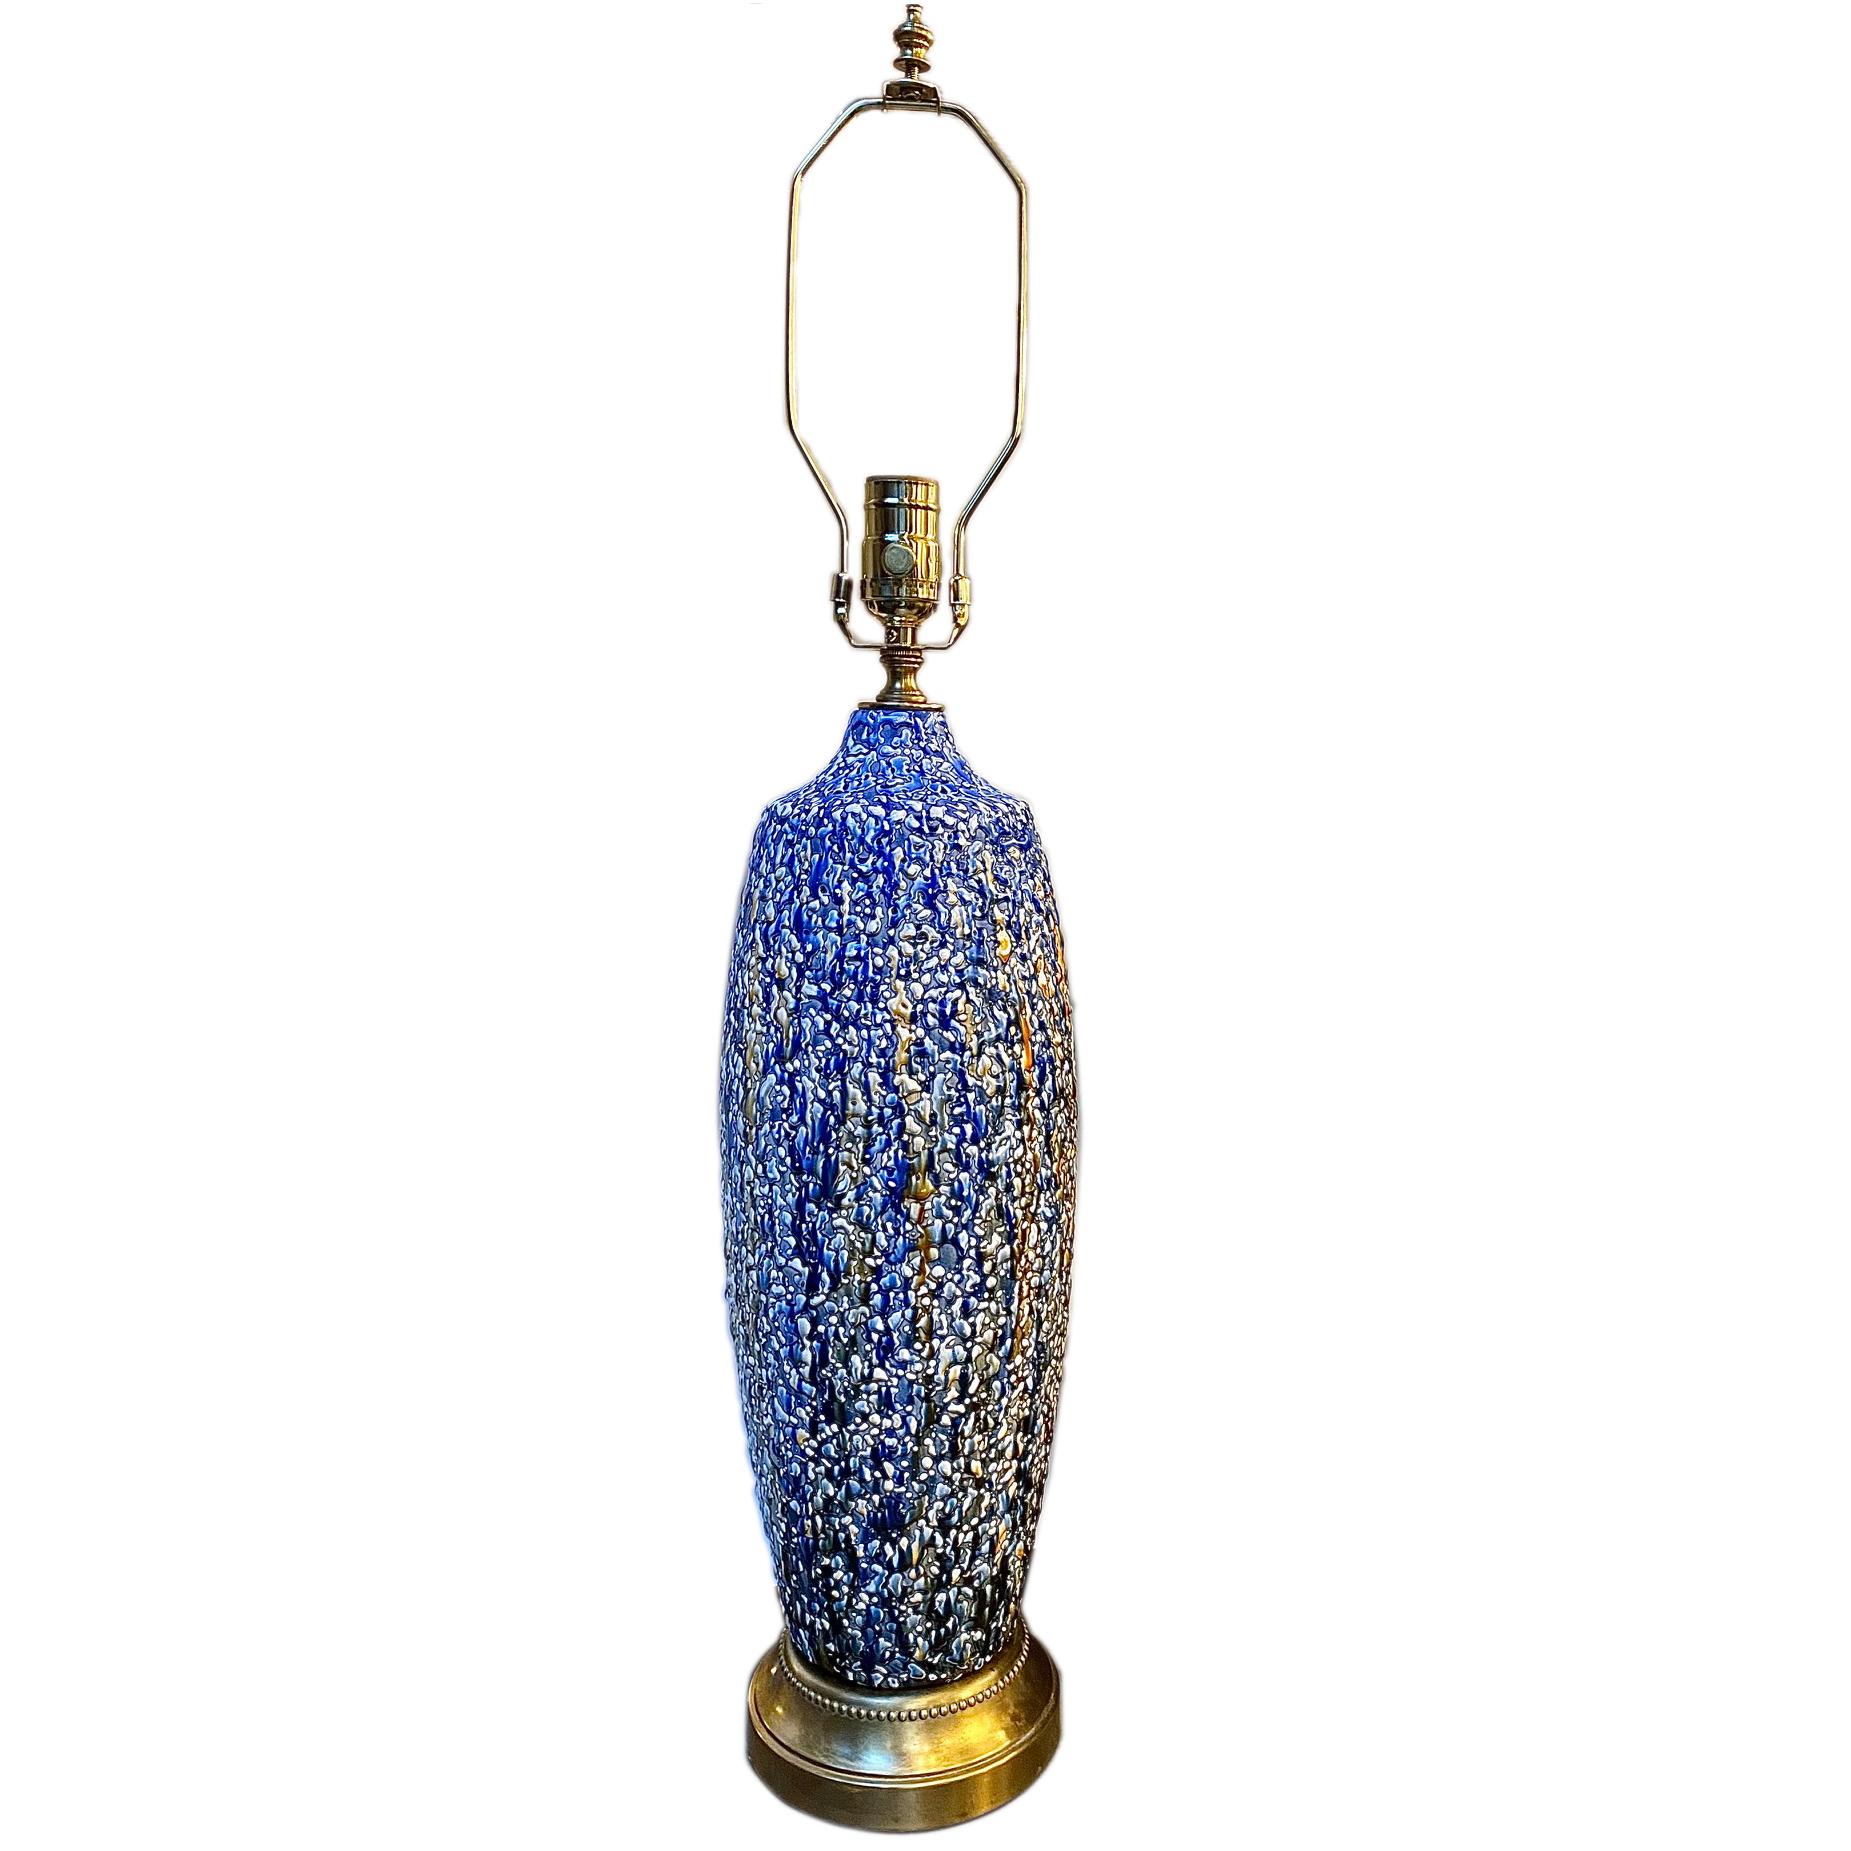 Lampe de table moderne française texturée et émaillée des années 1960 avec base en bronze.

Mesures :
Hauteur du corps : 18.5